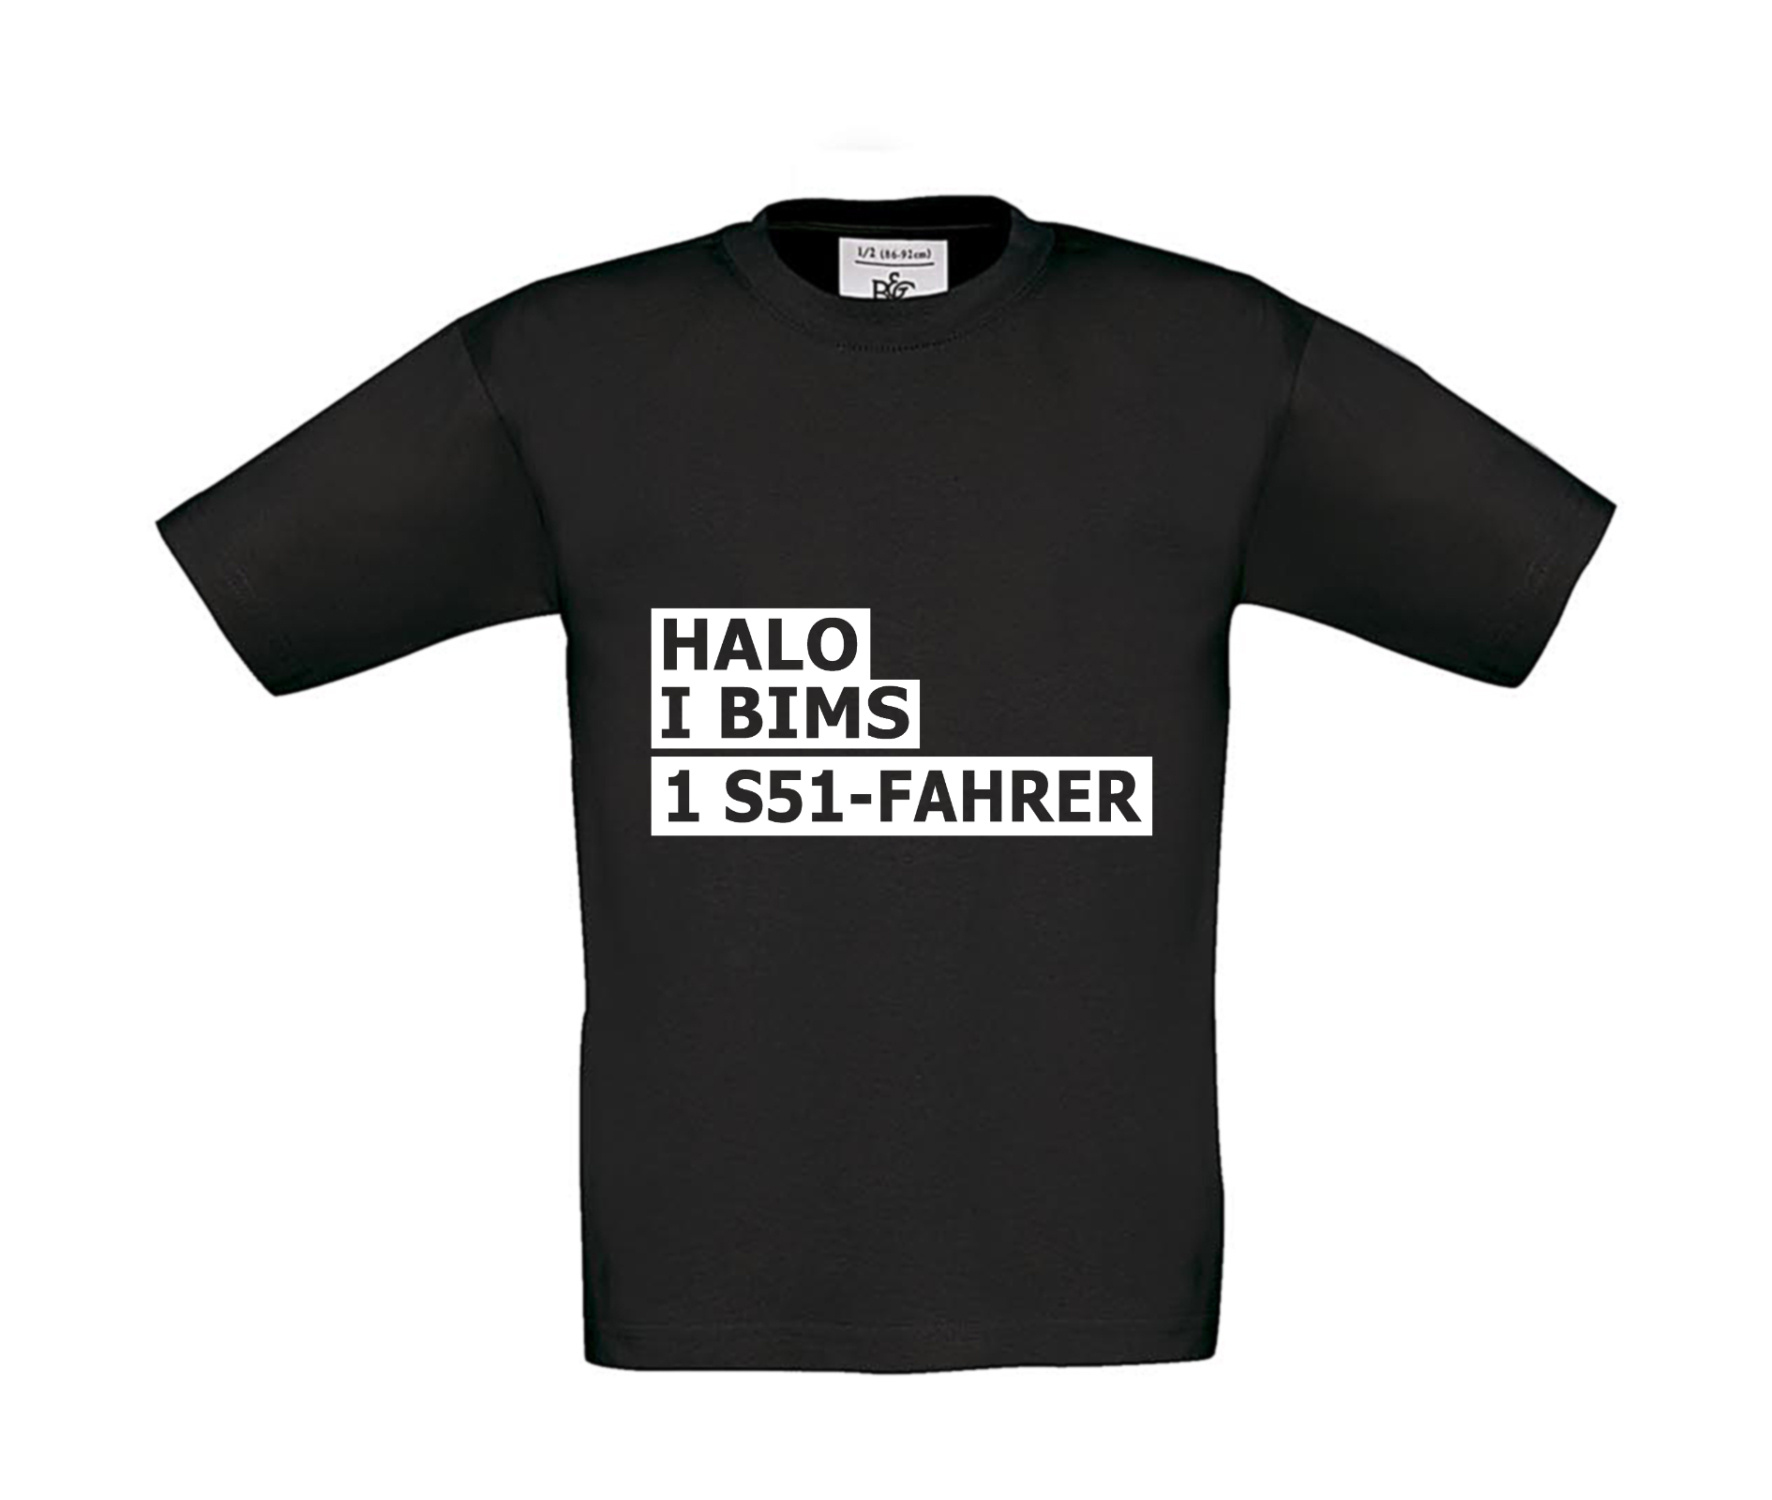 T-Shirt Kinder 2Takter - Halo I bims 1 S51-Fahrer